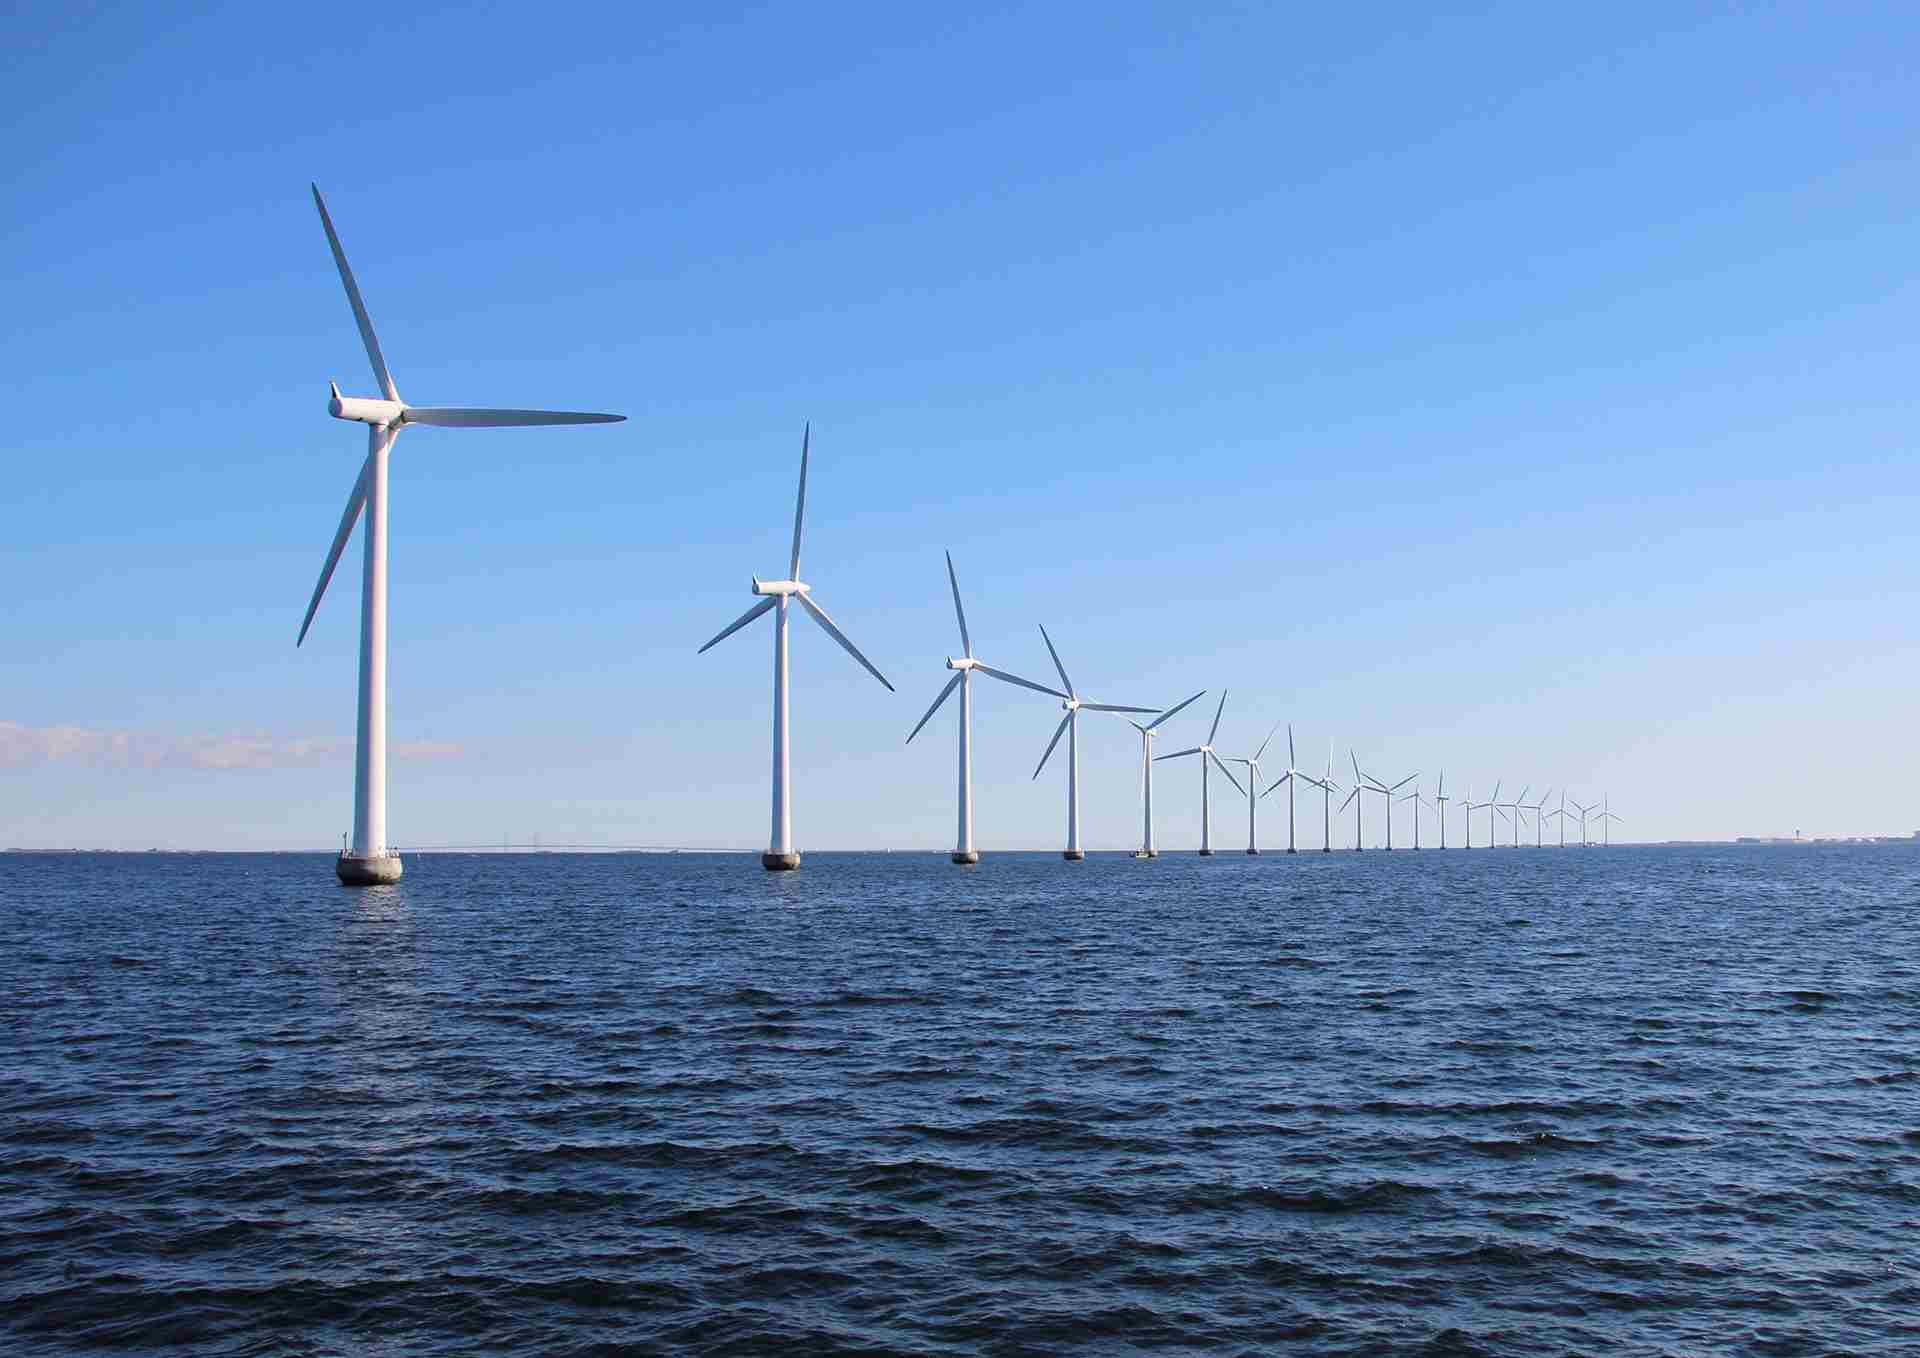 Systeemintegratie wind op zee 2030-2040